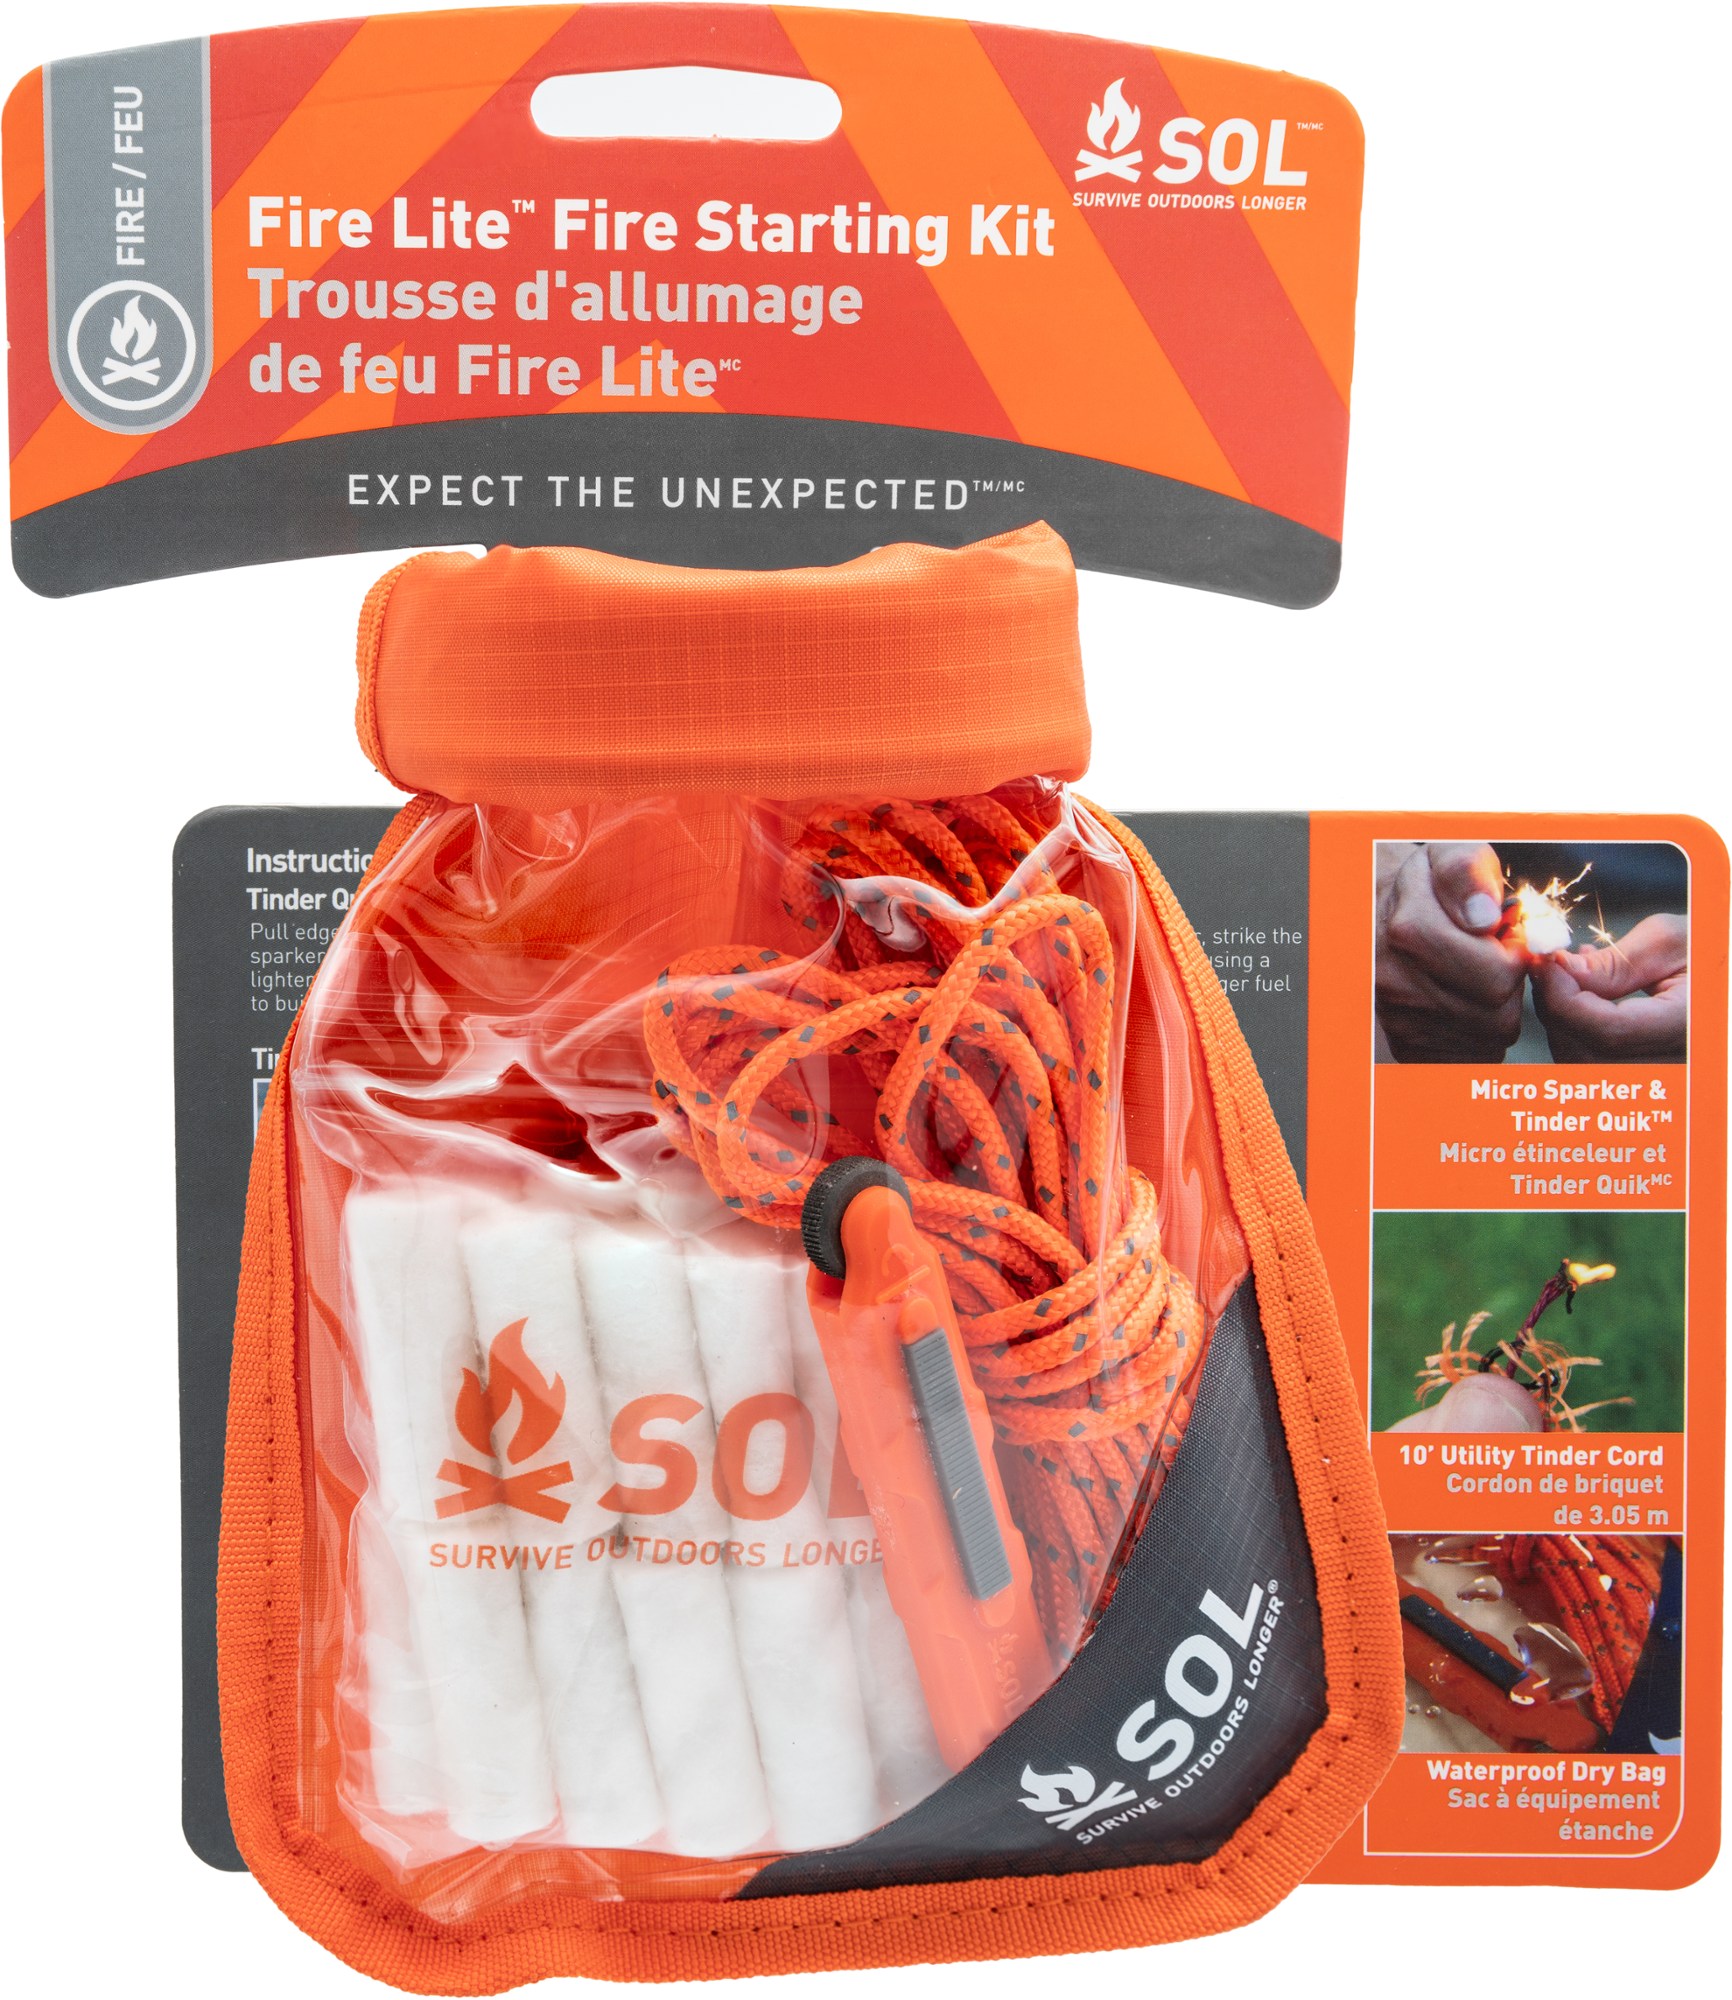 Комплект для розжига огня Fire Lite в сухом мешке SOL, оранжевый